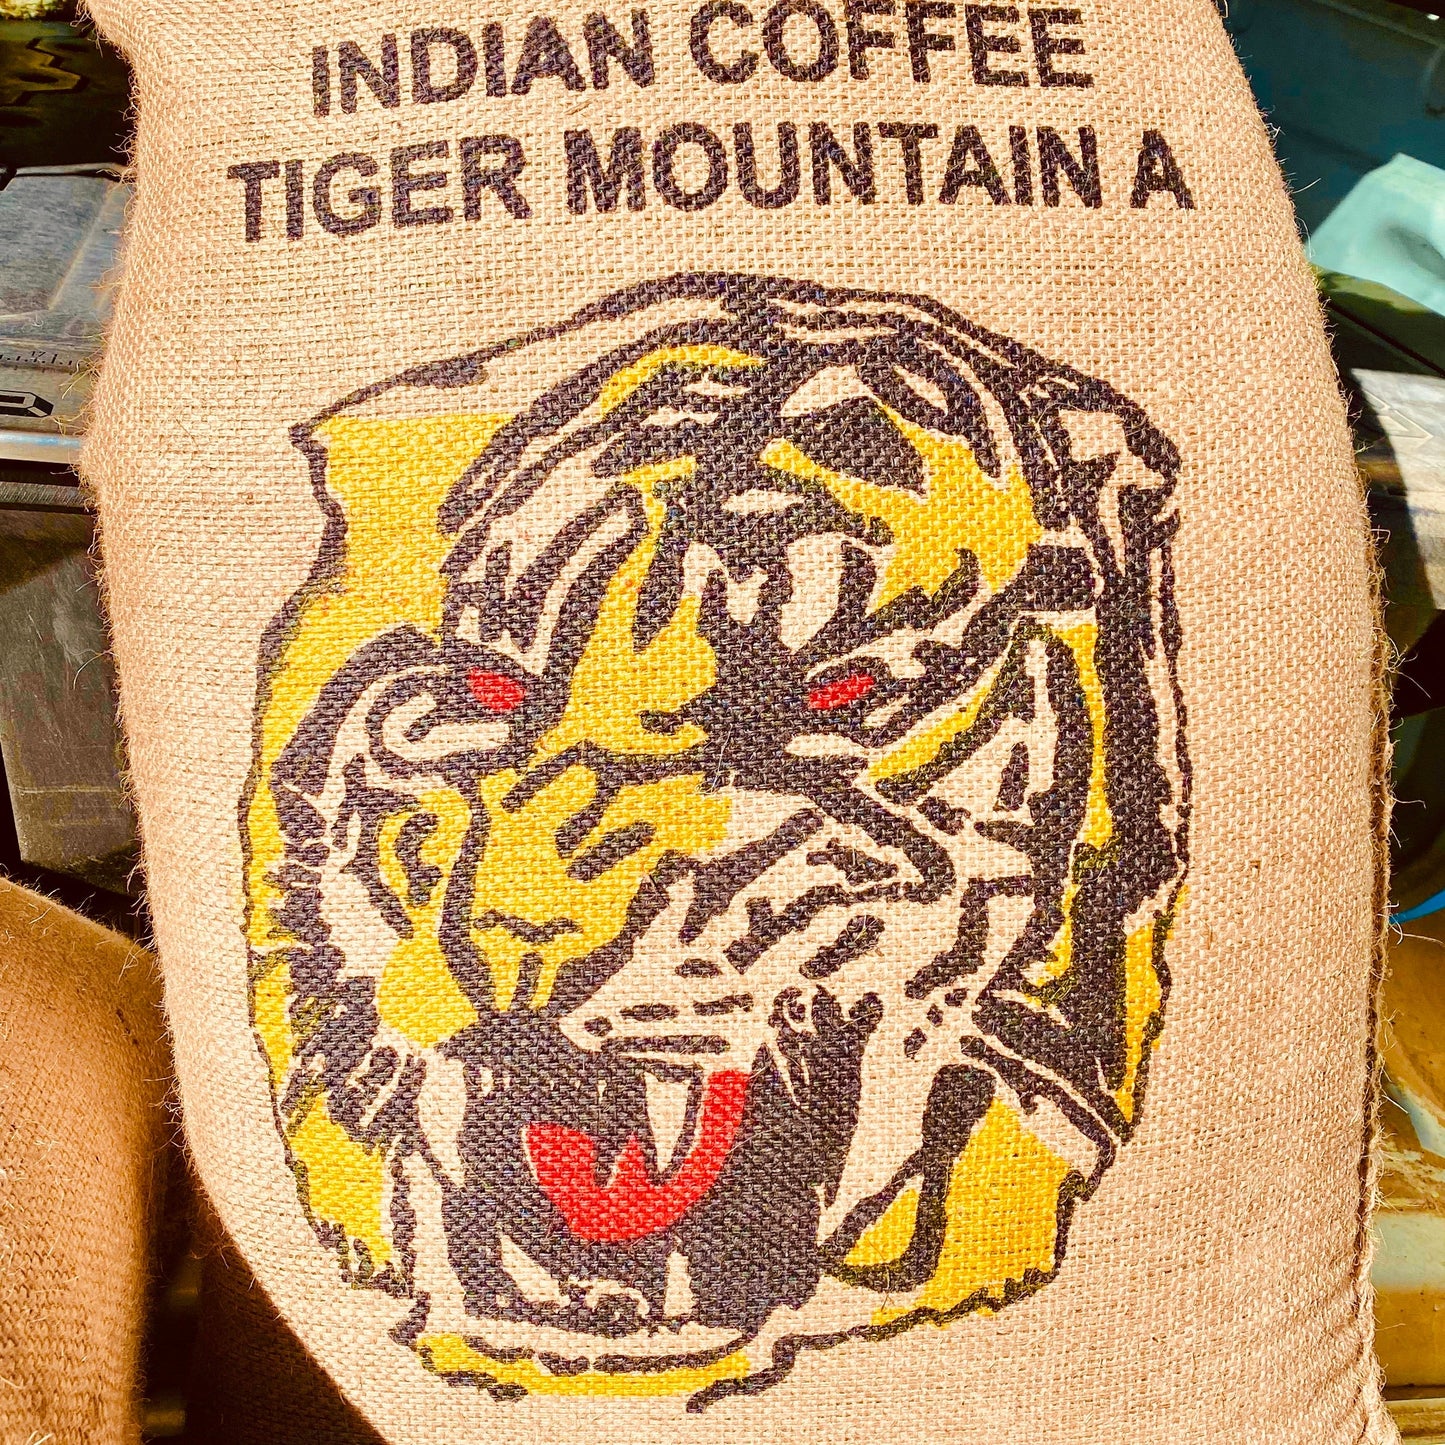 Tiger Richmond Coffee Ballarat